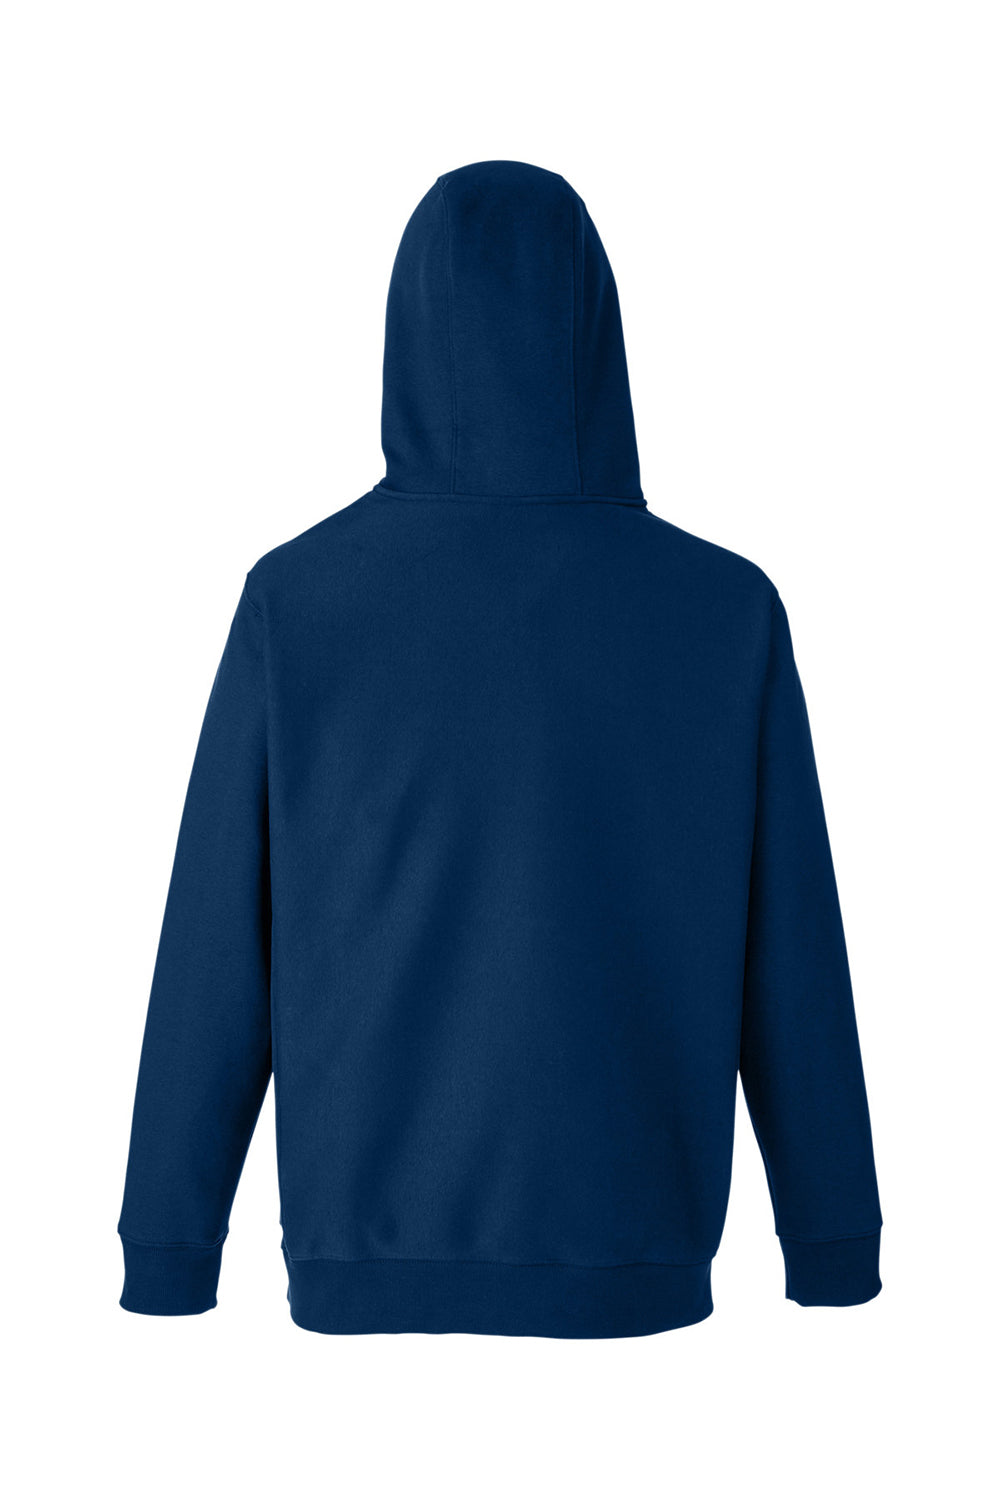 Team 365 TT97 Mens Zone HydroSport 1/4 Zip Hooded Sweatshirt Hoodie Dark Navy Blue Flat Back